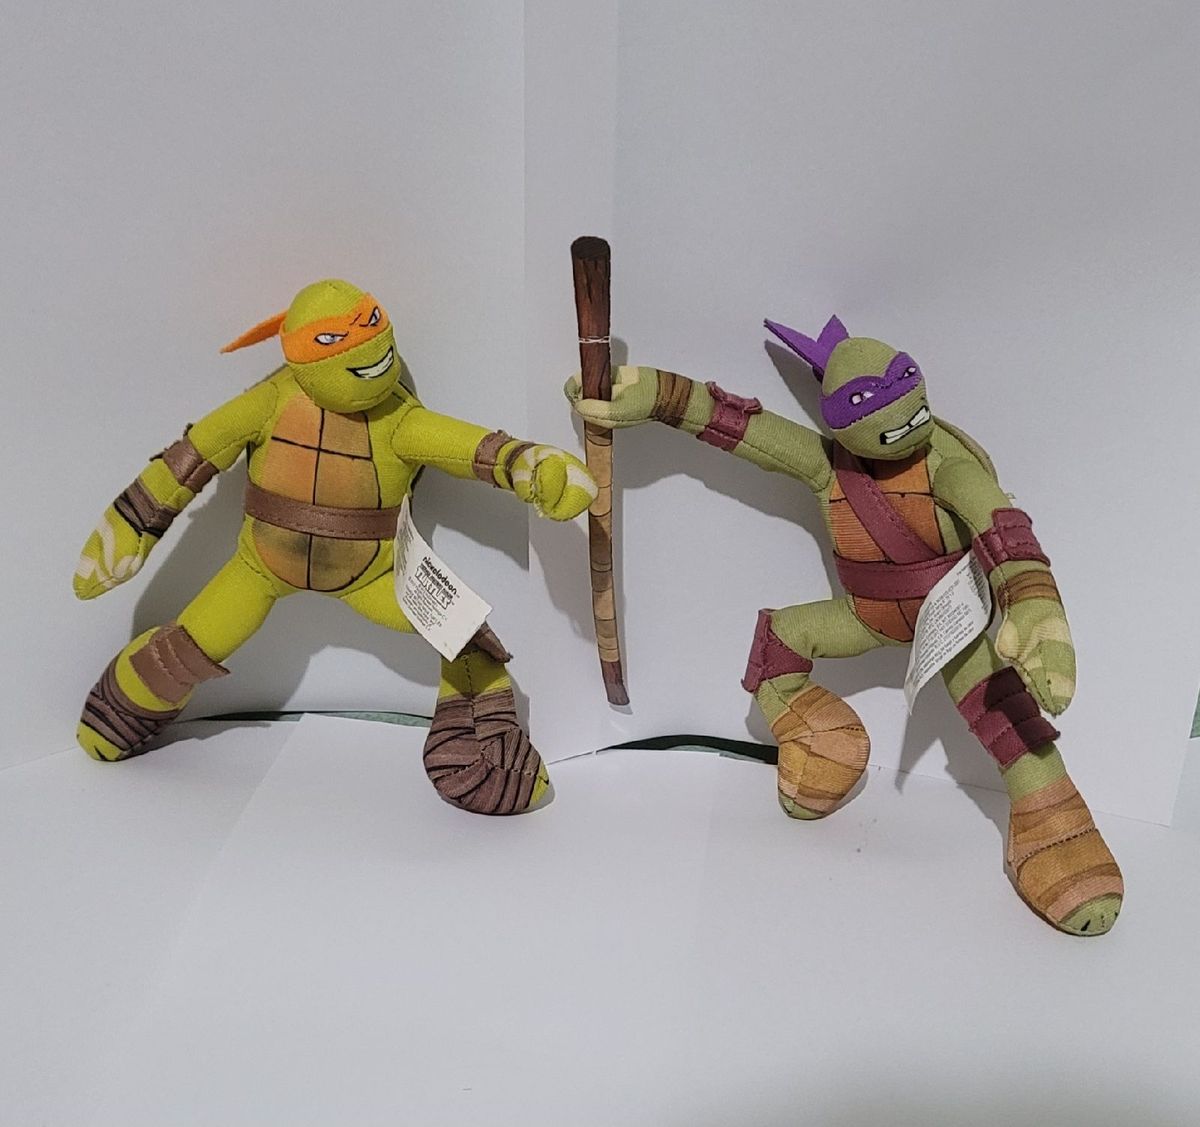 Boneco Pelúcia Grande Tartarugas Ninja Donatello 45cm